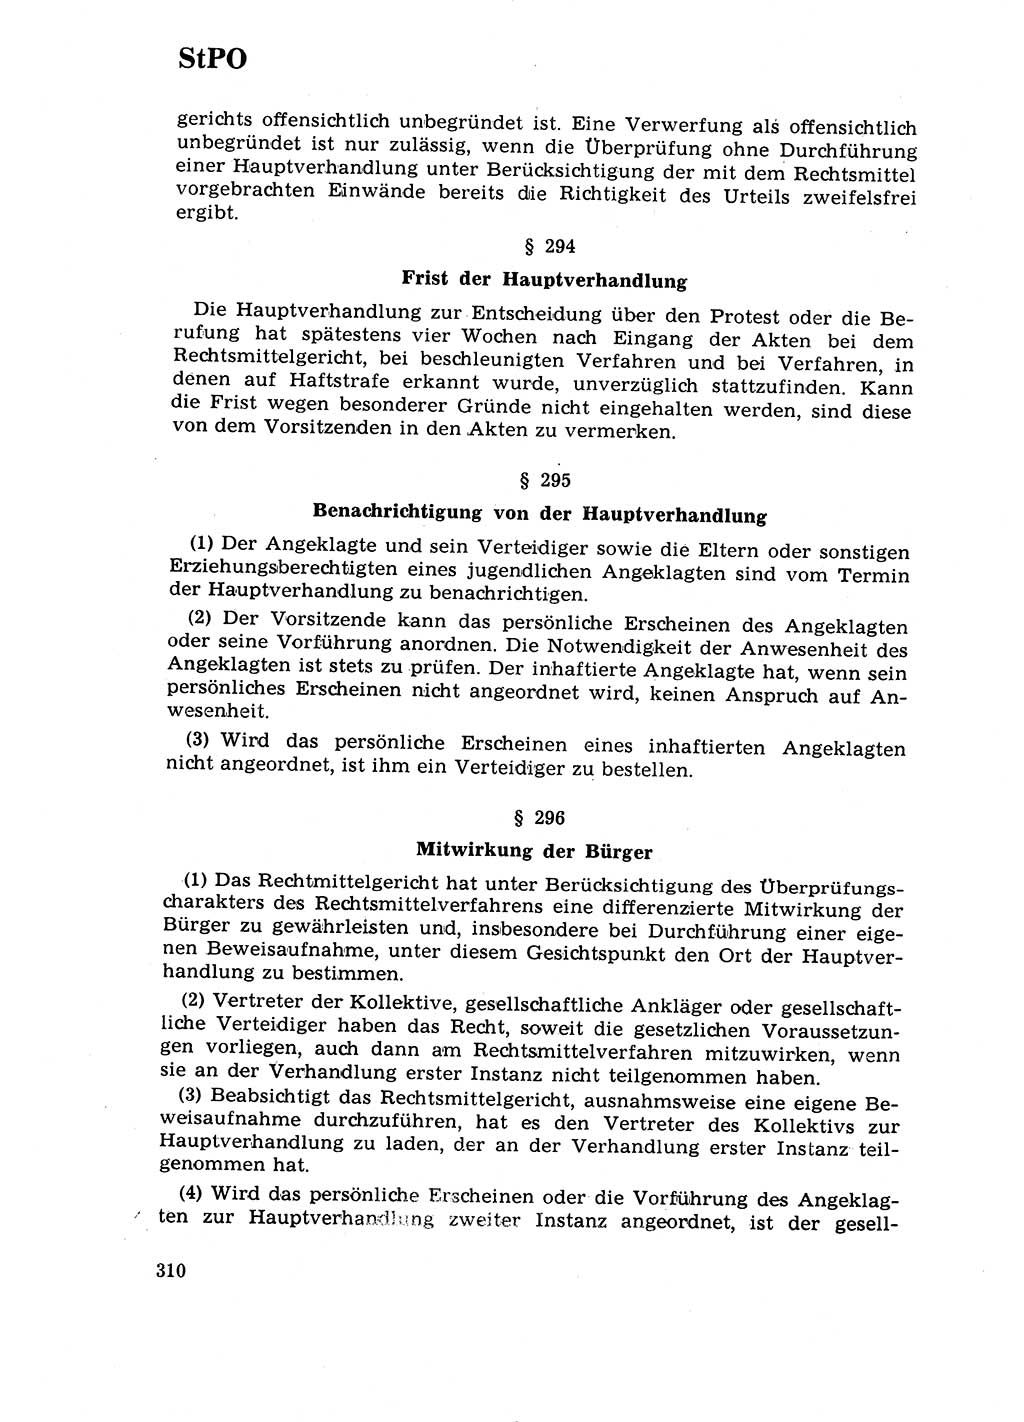 Strafrecht [Deutsche Demokratische Republik (DDR)] 1968, Seite 310 (Strafr. DDR 1968, S. 310)